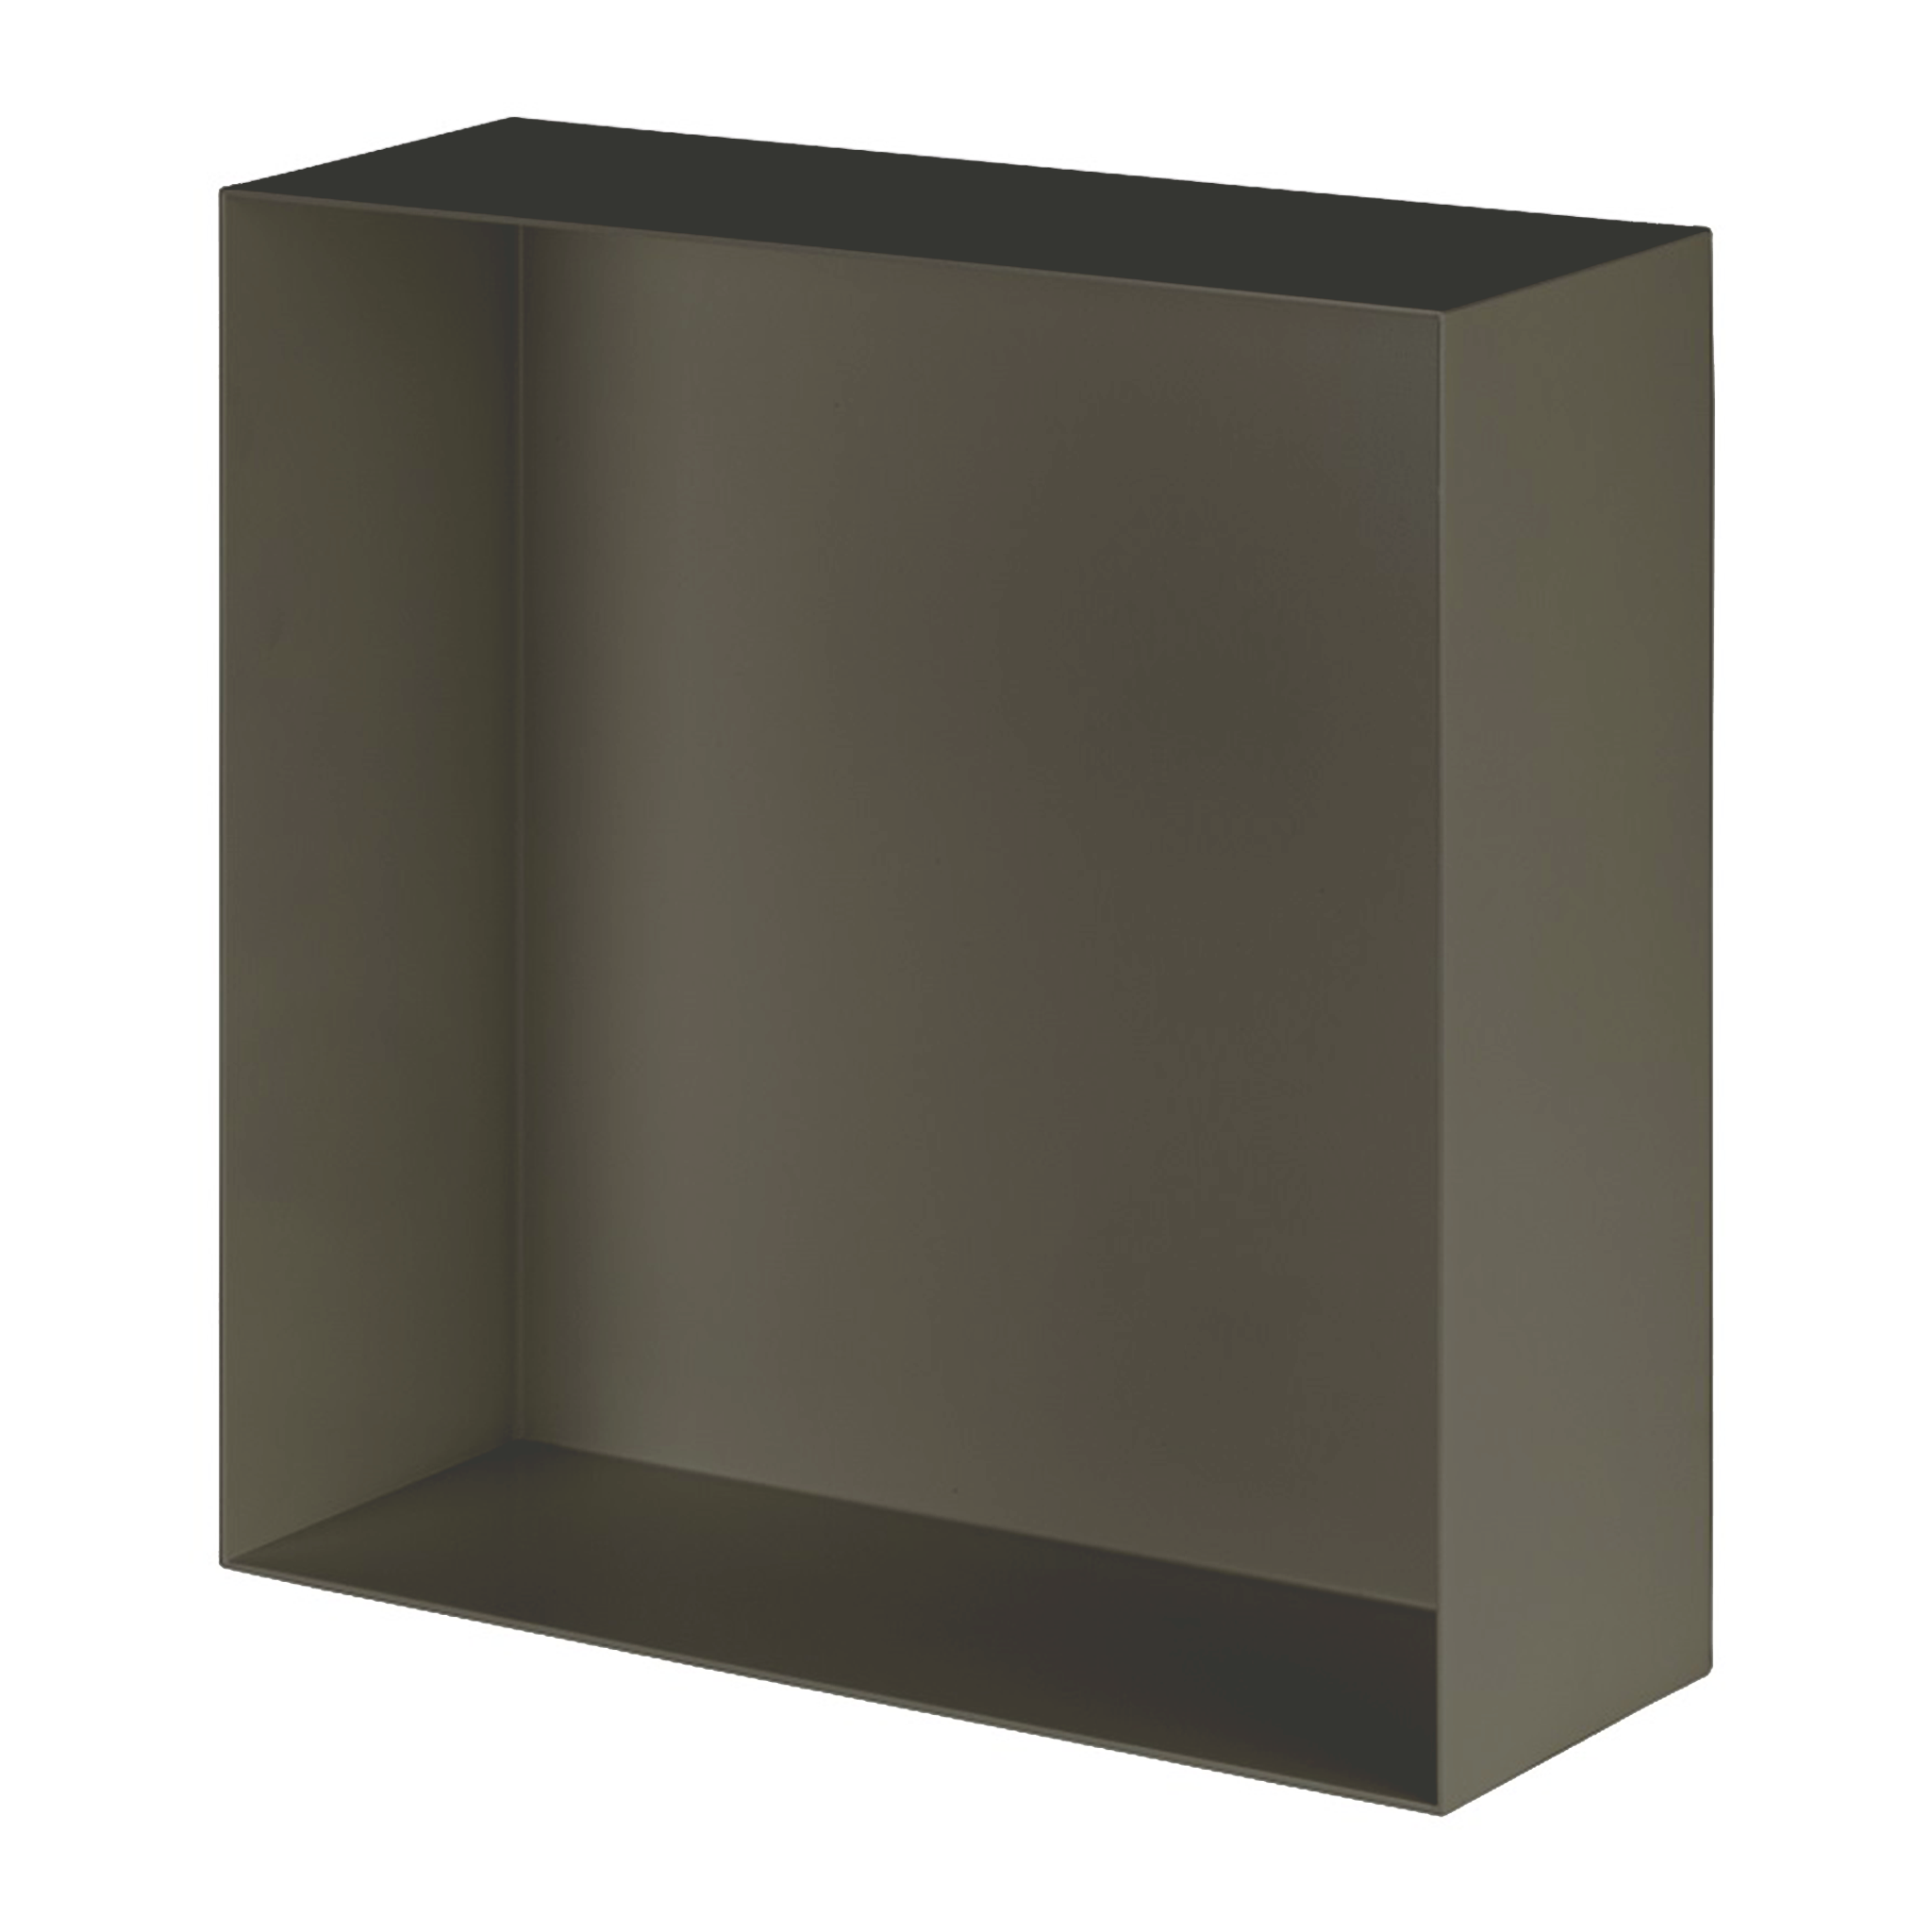 Valli Home – V-Box, Nicchia portaoggetti in Metallo smaltato color Grigio Scuro KK71, Misura 40X40 P. 10 cm – V-BOX.MLLO.40X40.71